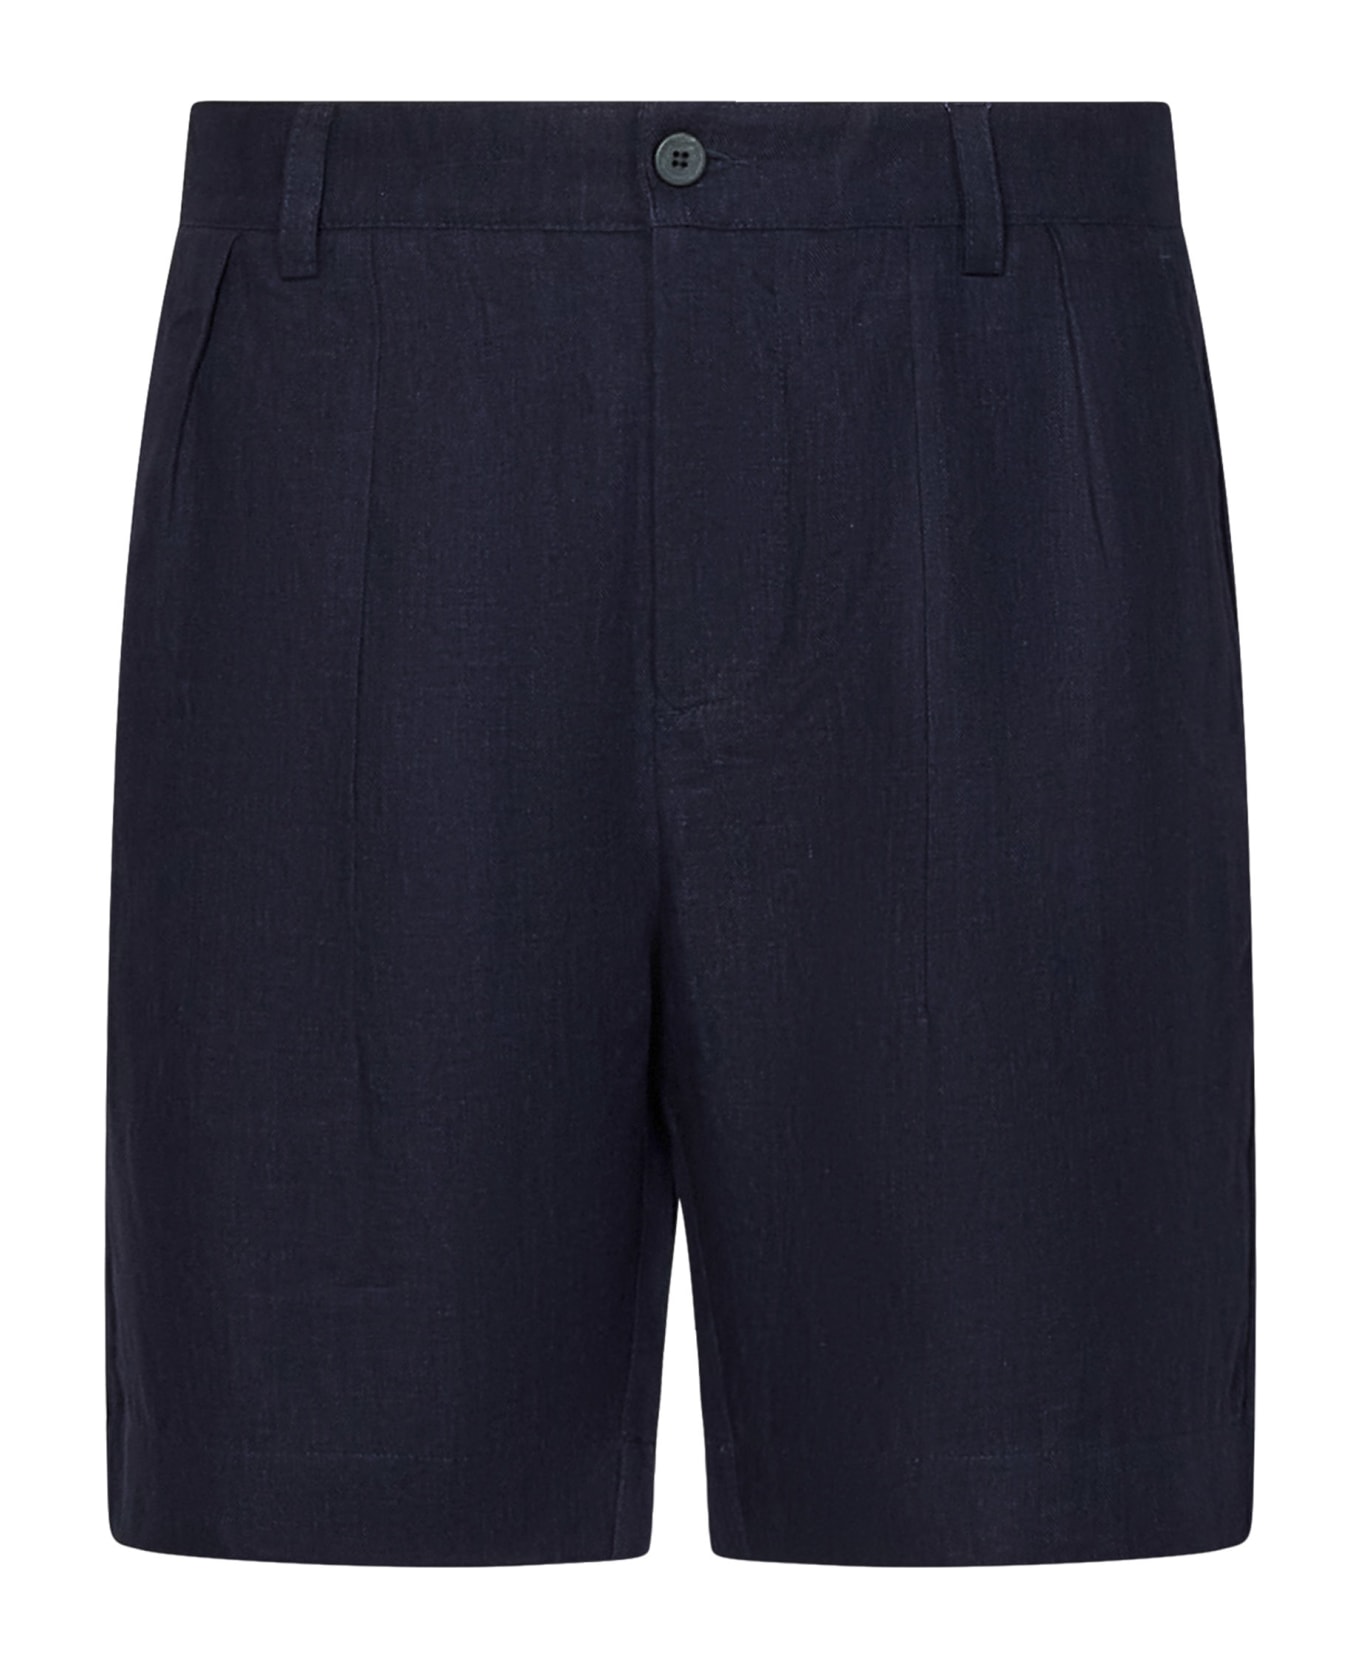 Sease Easy Pant Shorts - Blue